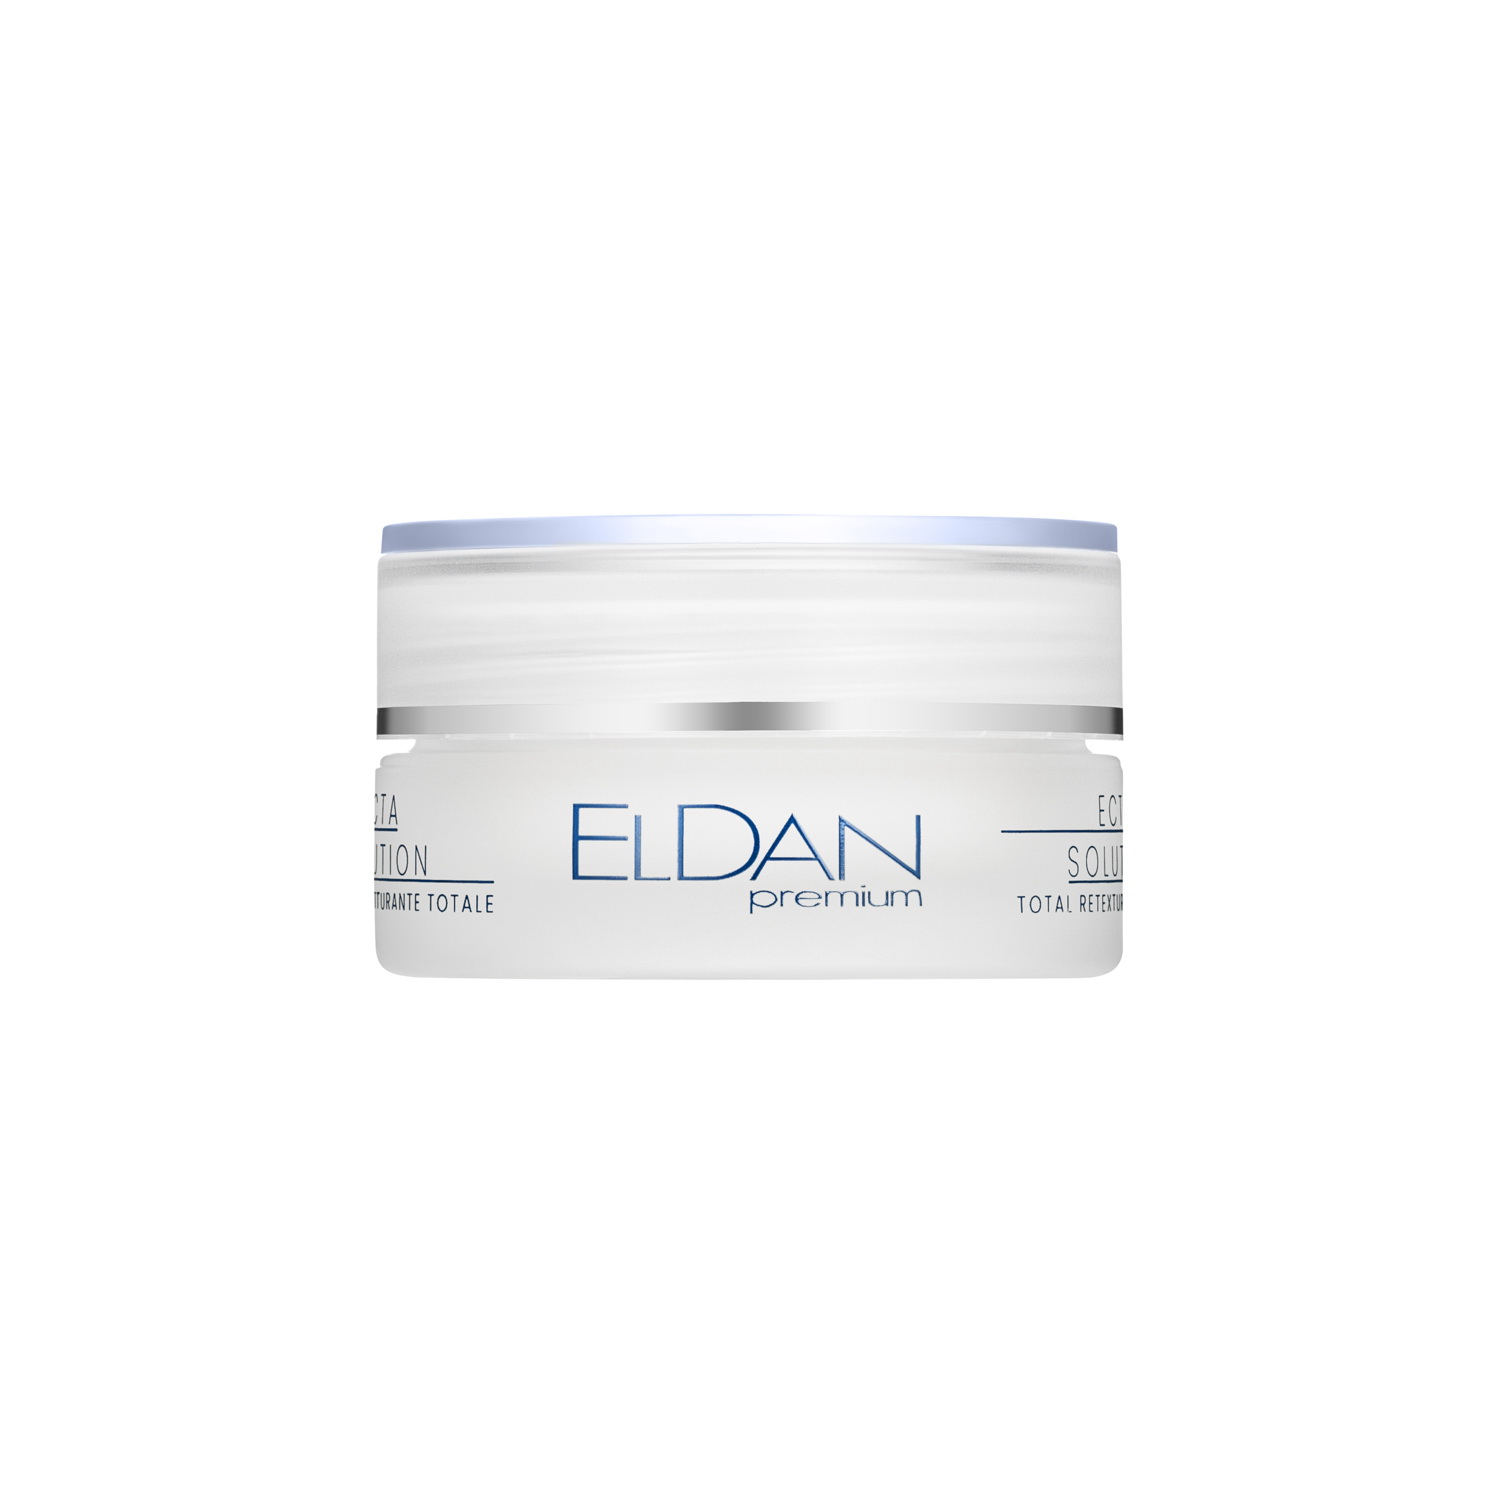 Крем для лица ELDAN Cosmetics Premium ECTA 40+ интенсивный, легкий, 50 мл one thing натуральное масло жожоба для лица и волос 30